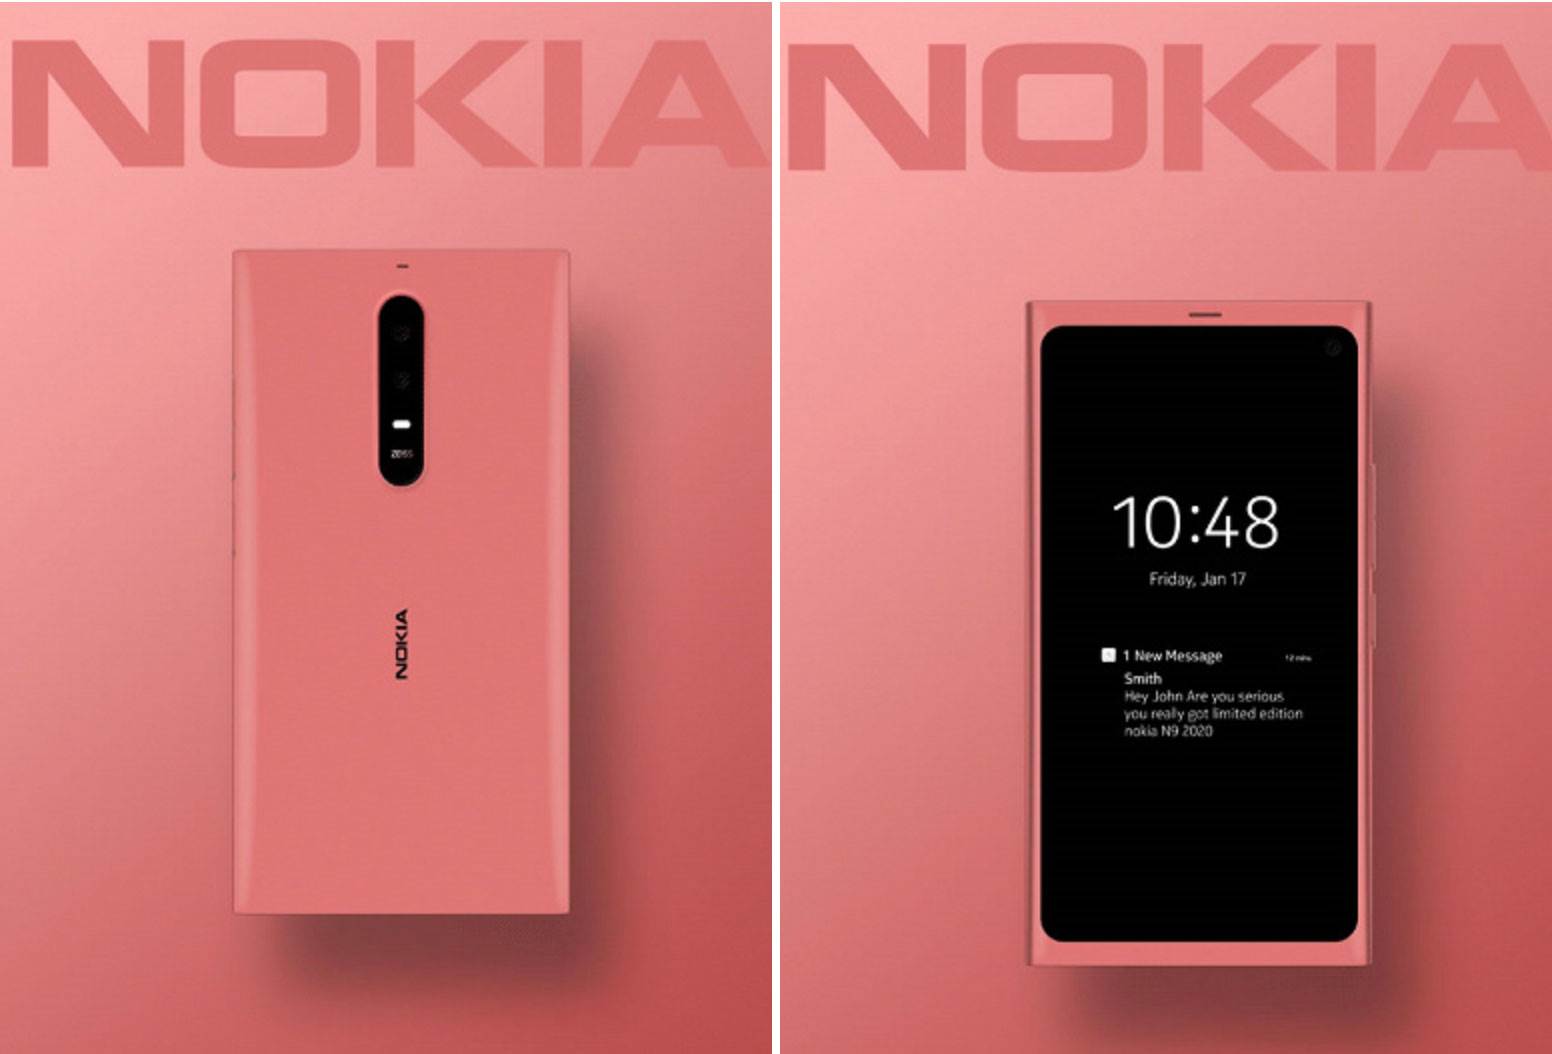 Kolejna legendarna Nokia powraca! polecane, ciekawostki Nokia N9 Remastered Edition, Nokia N9 2020  Rok temu pojawiły się pierwsze plotki, że HMD Global planuje ożywić kolejny legendarny telefon Nokia. Teraz chińskie media potwierdziły, że tak właśnie się stanie! nokia n9 2020